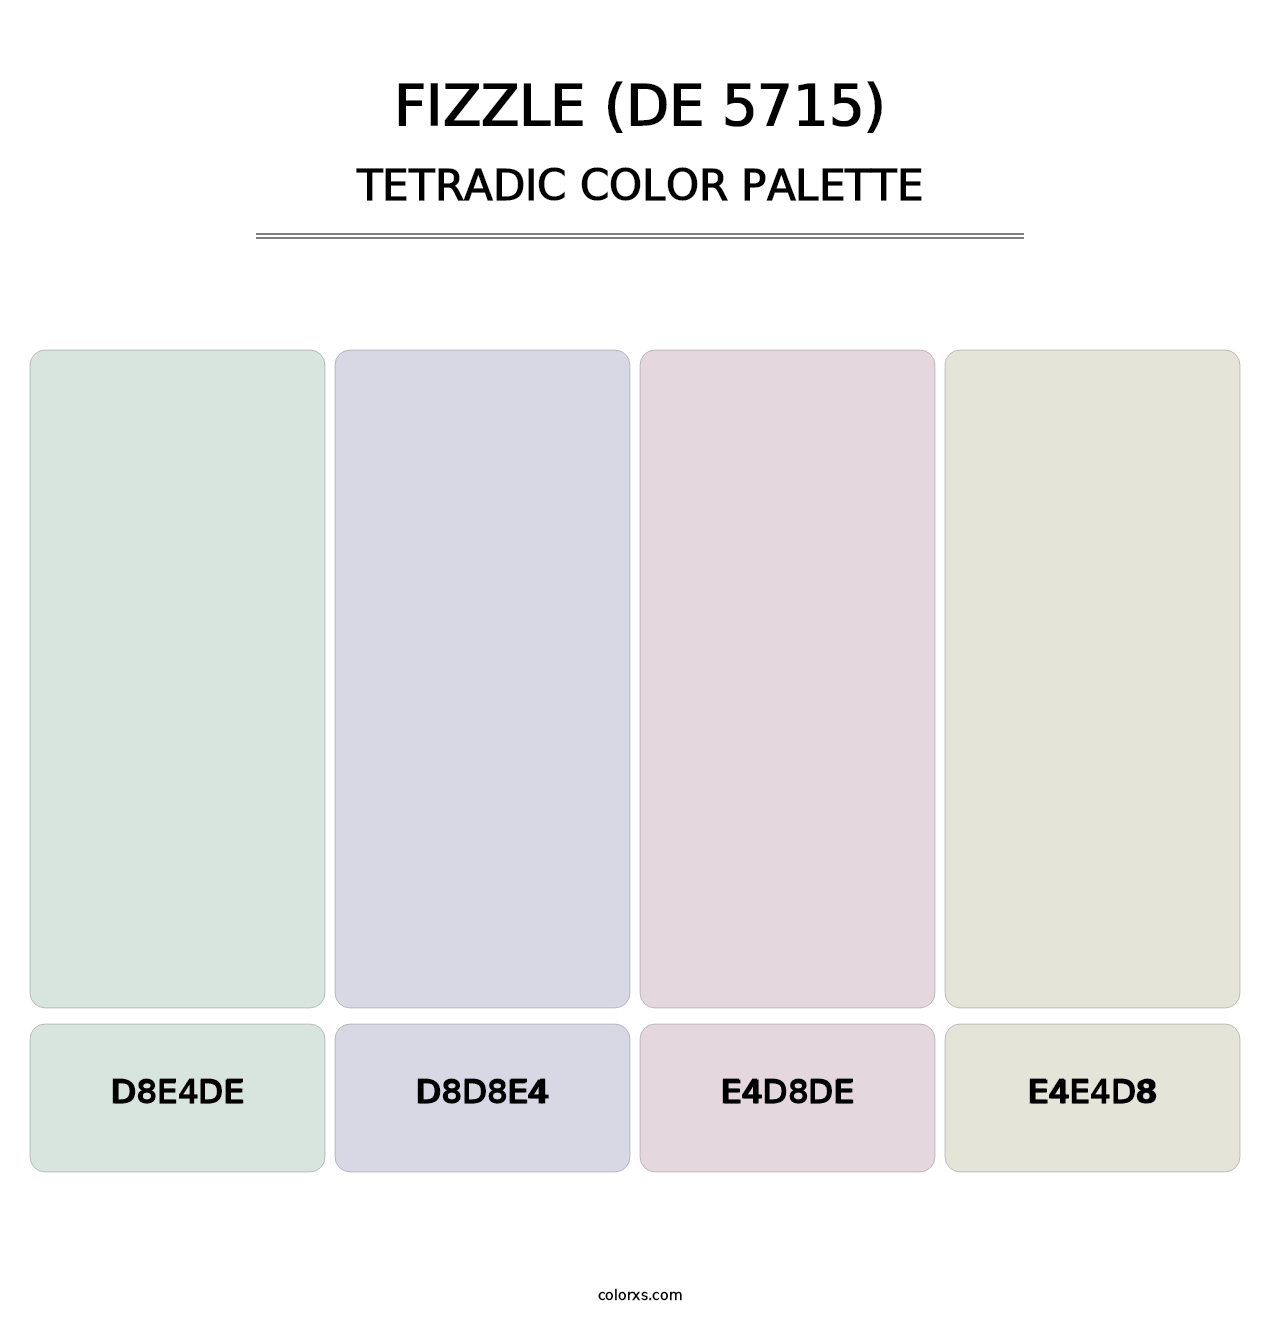 Fizzle (DE 5715) - Tetradic Color Palette